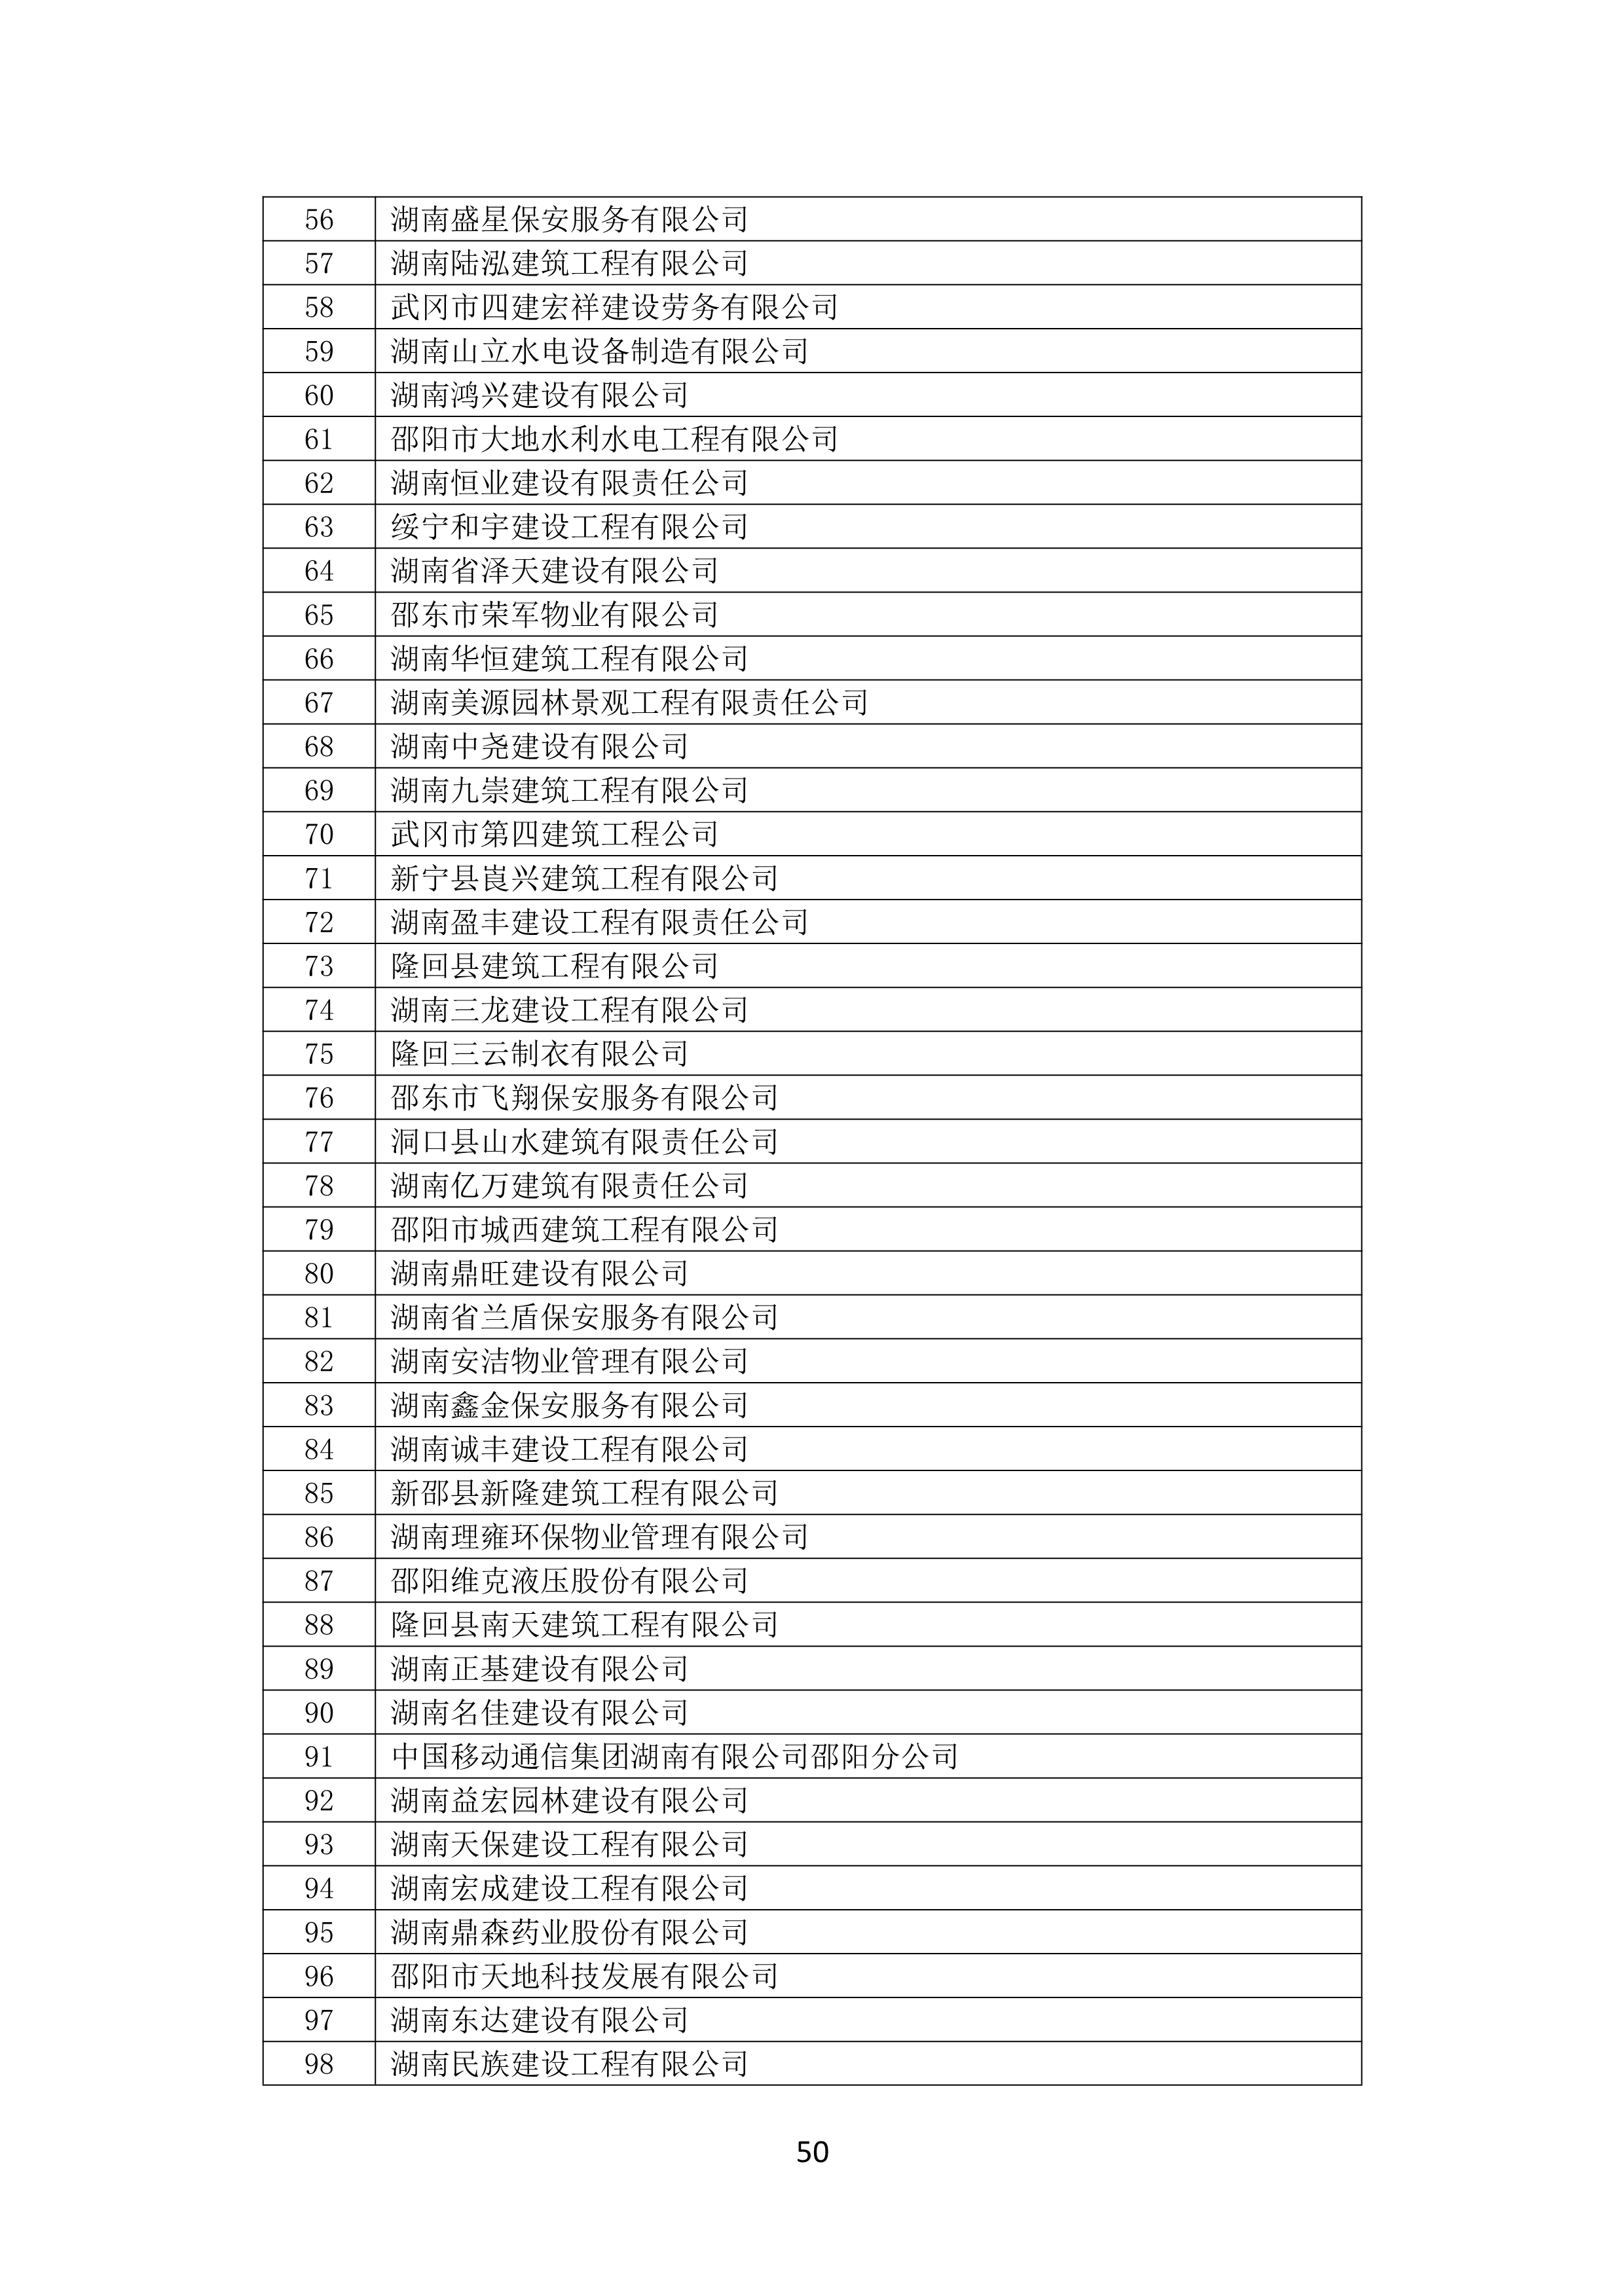 2021 年(nián)度湖南省守合同重信用企業名單_51.png